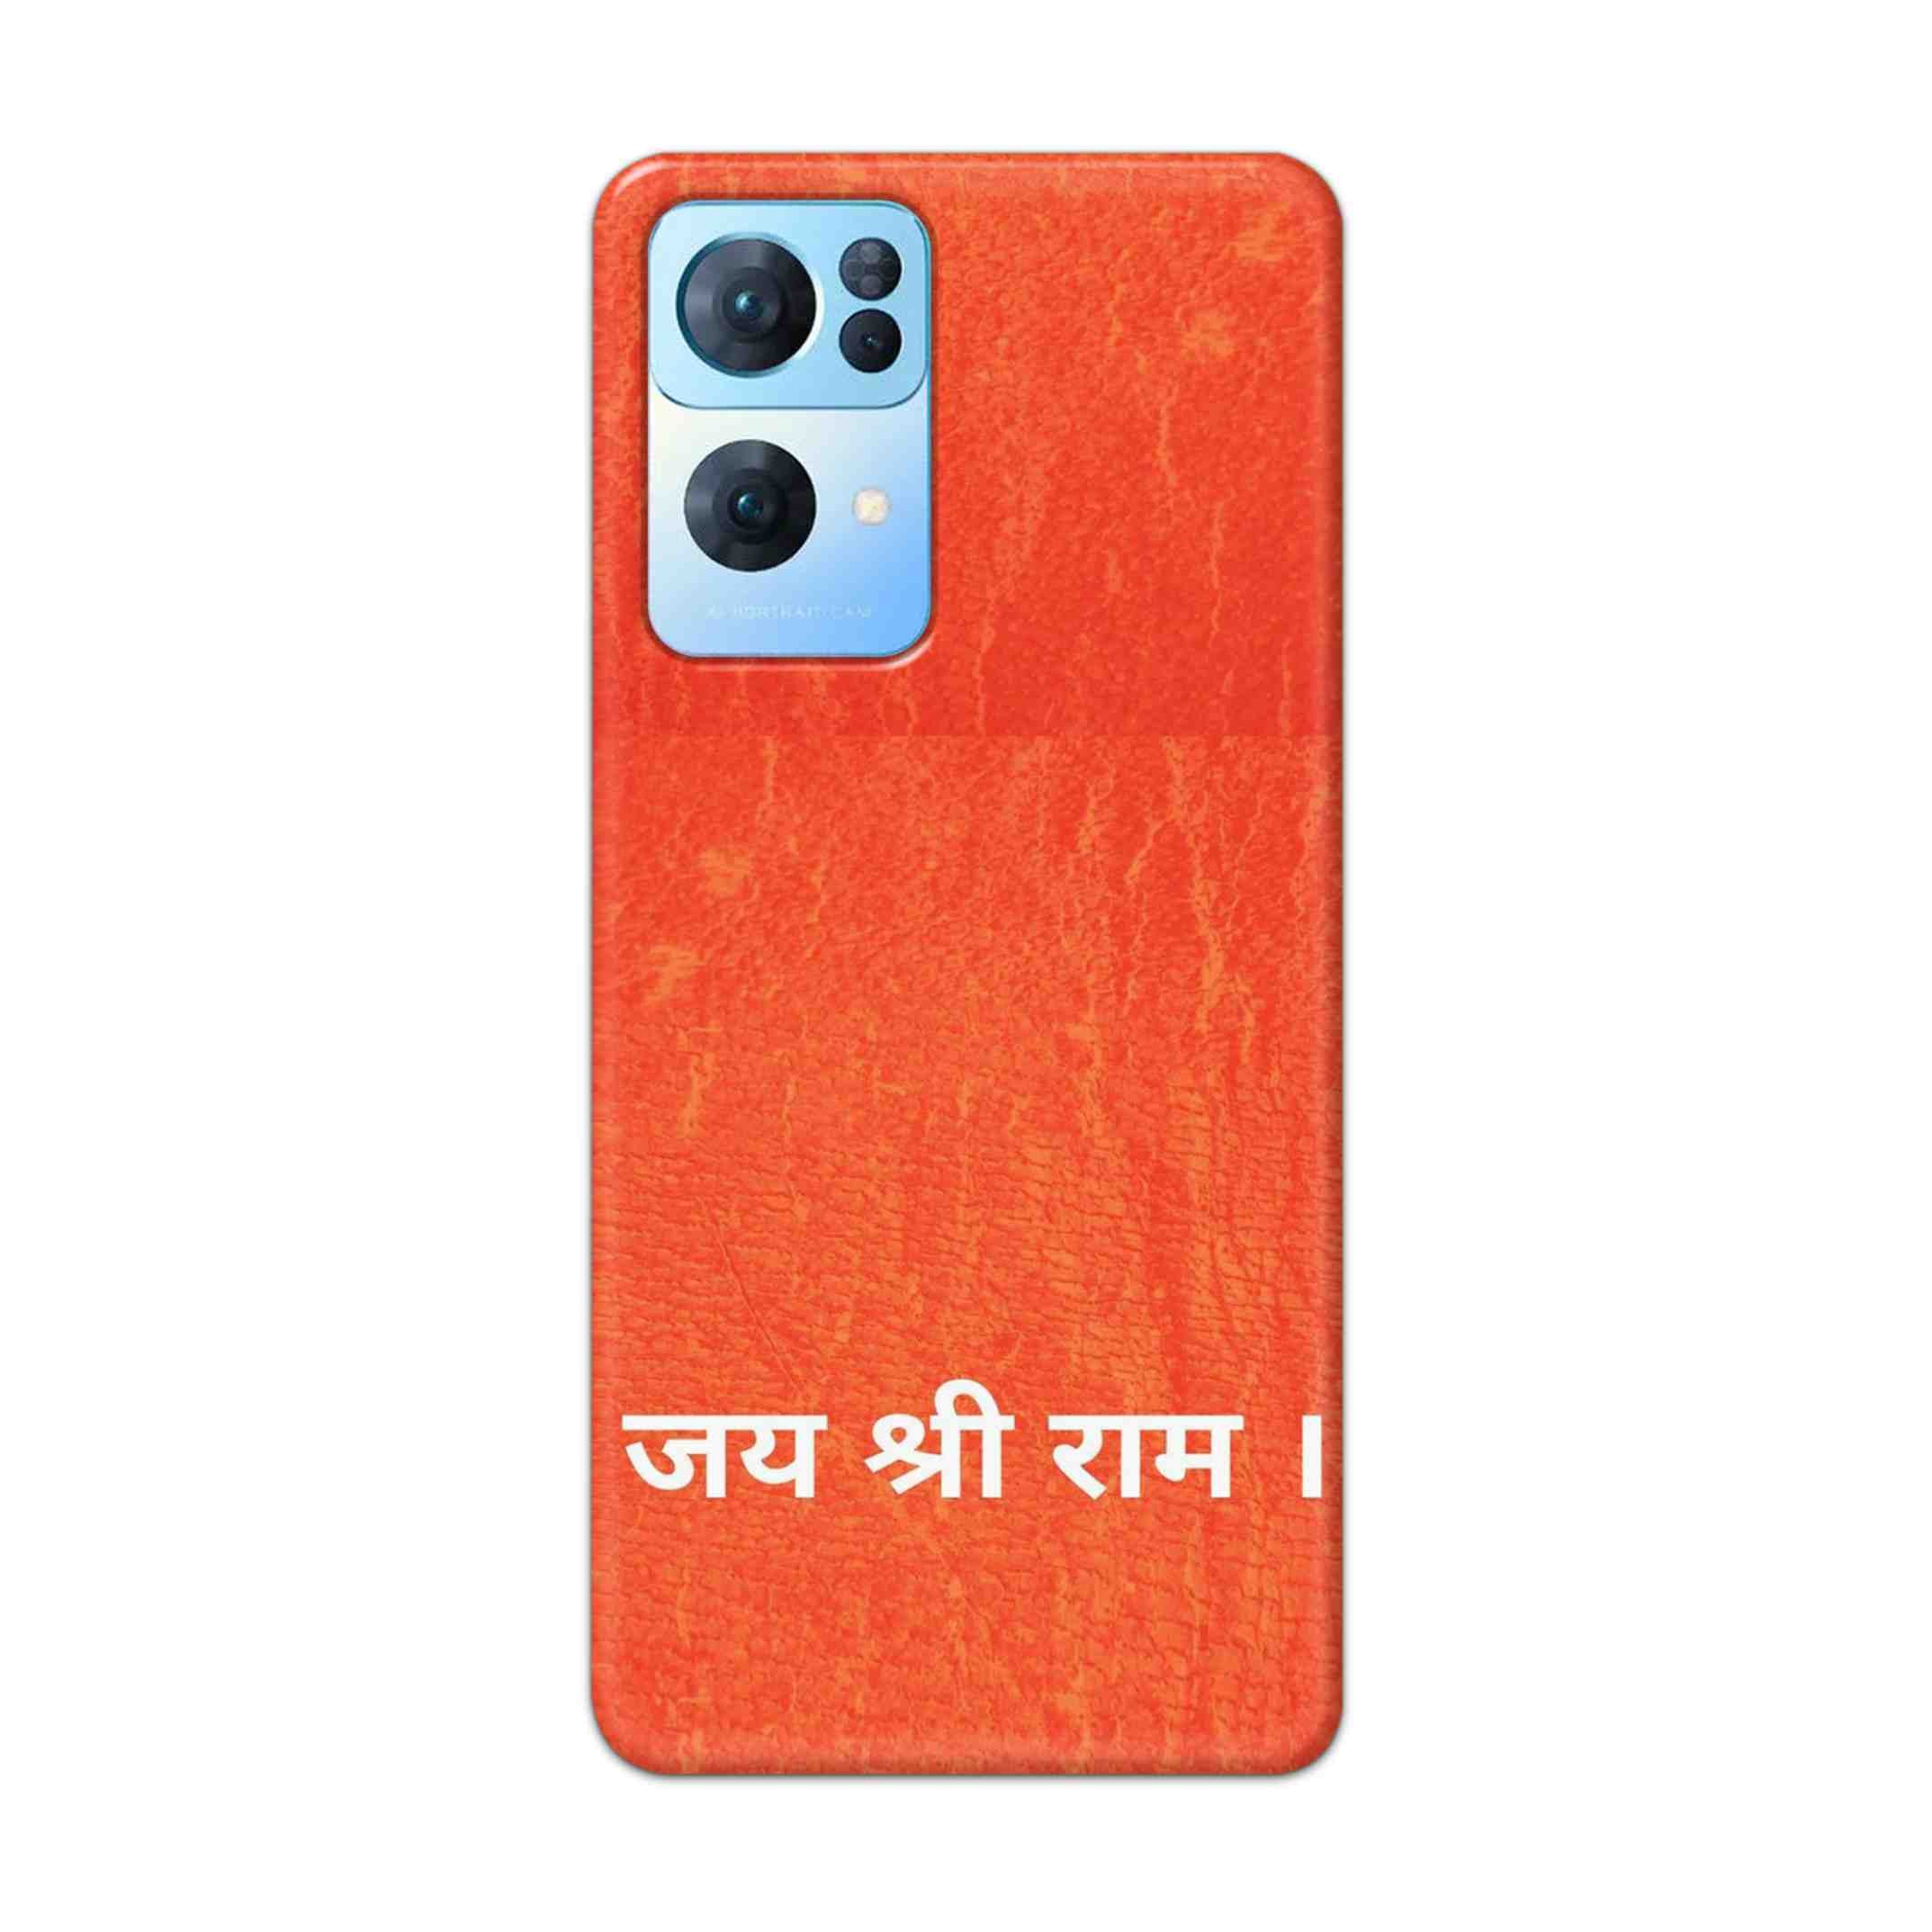 Buy Jai Shree Ram Hard Back Mobile Phone Case Cover For Oppo Reno 7 Pro Online